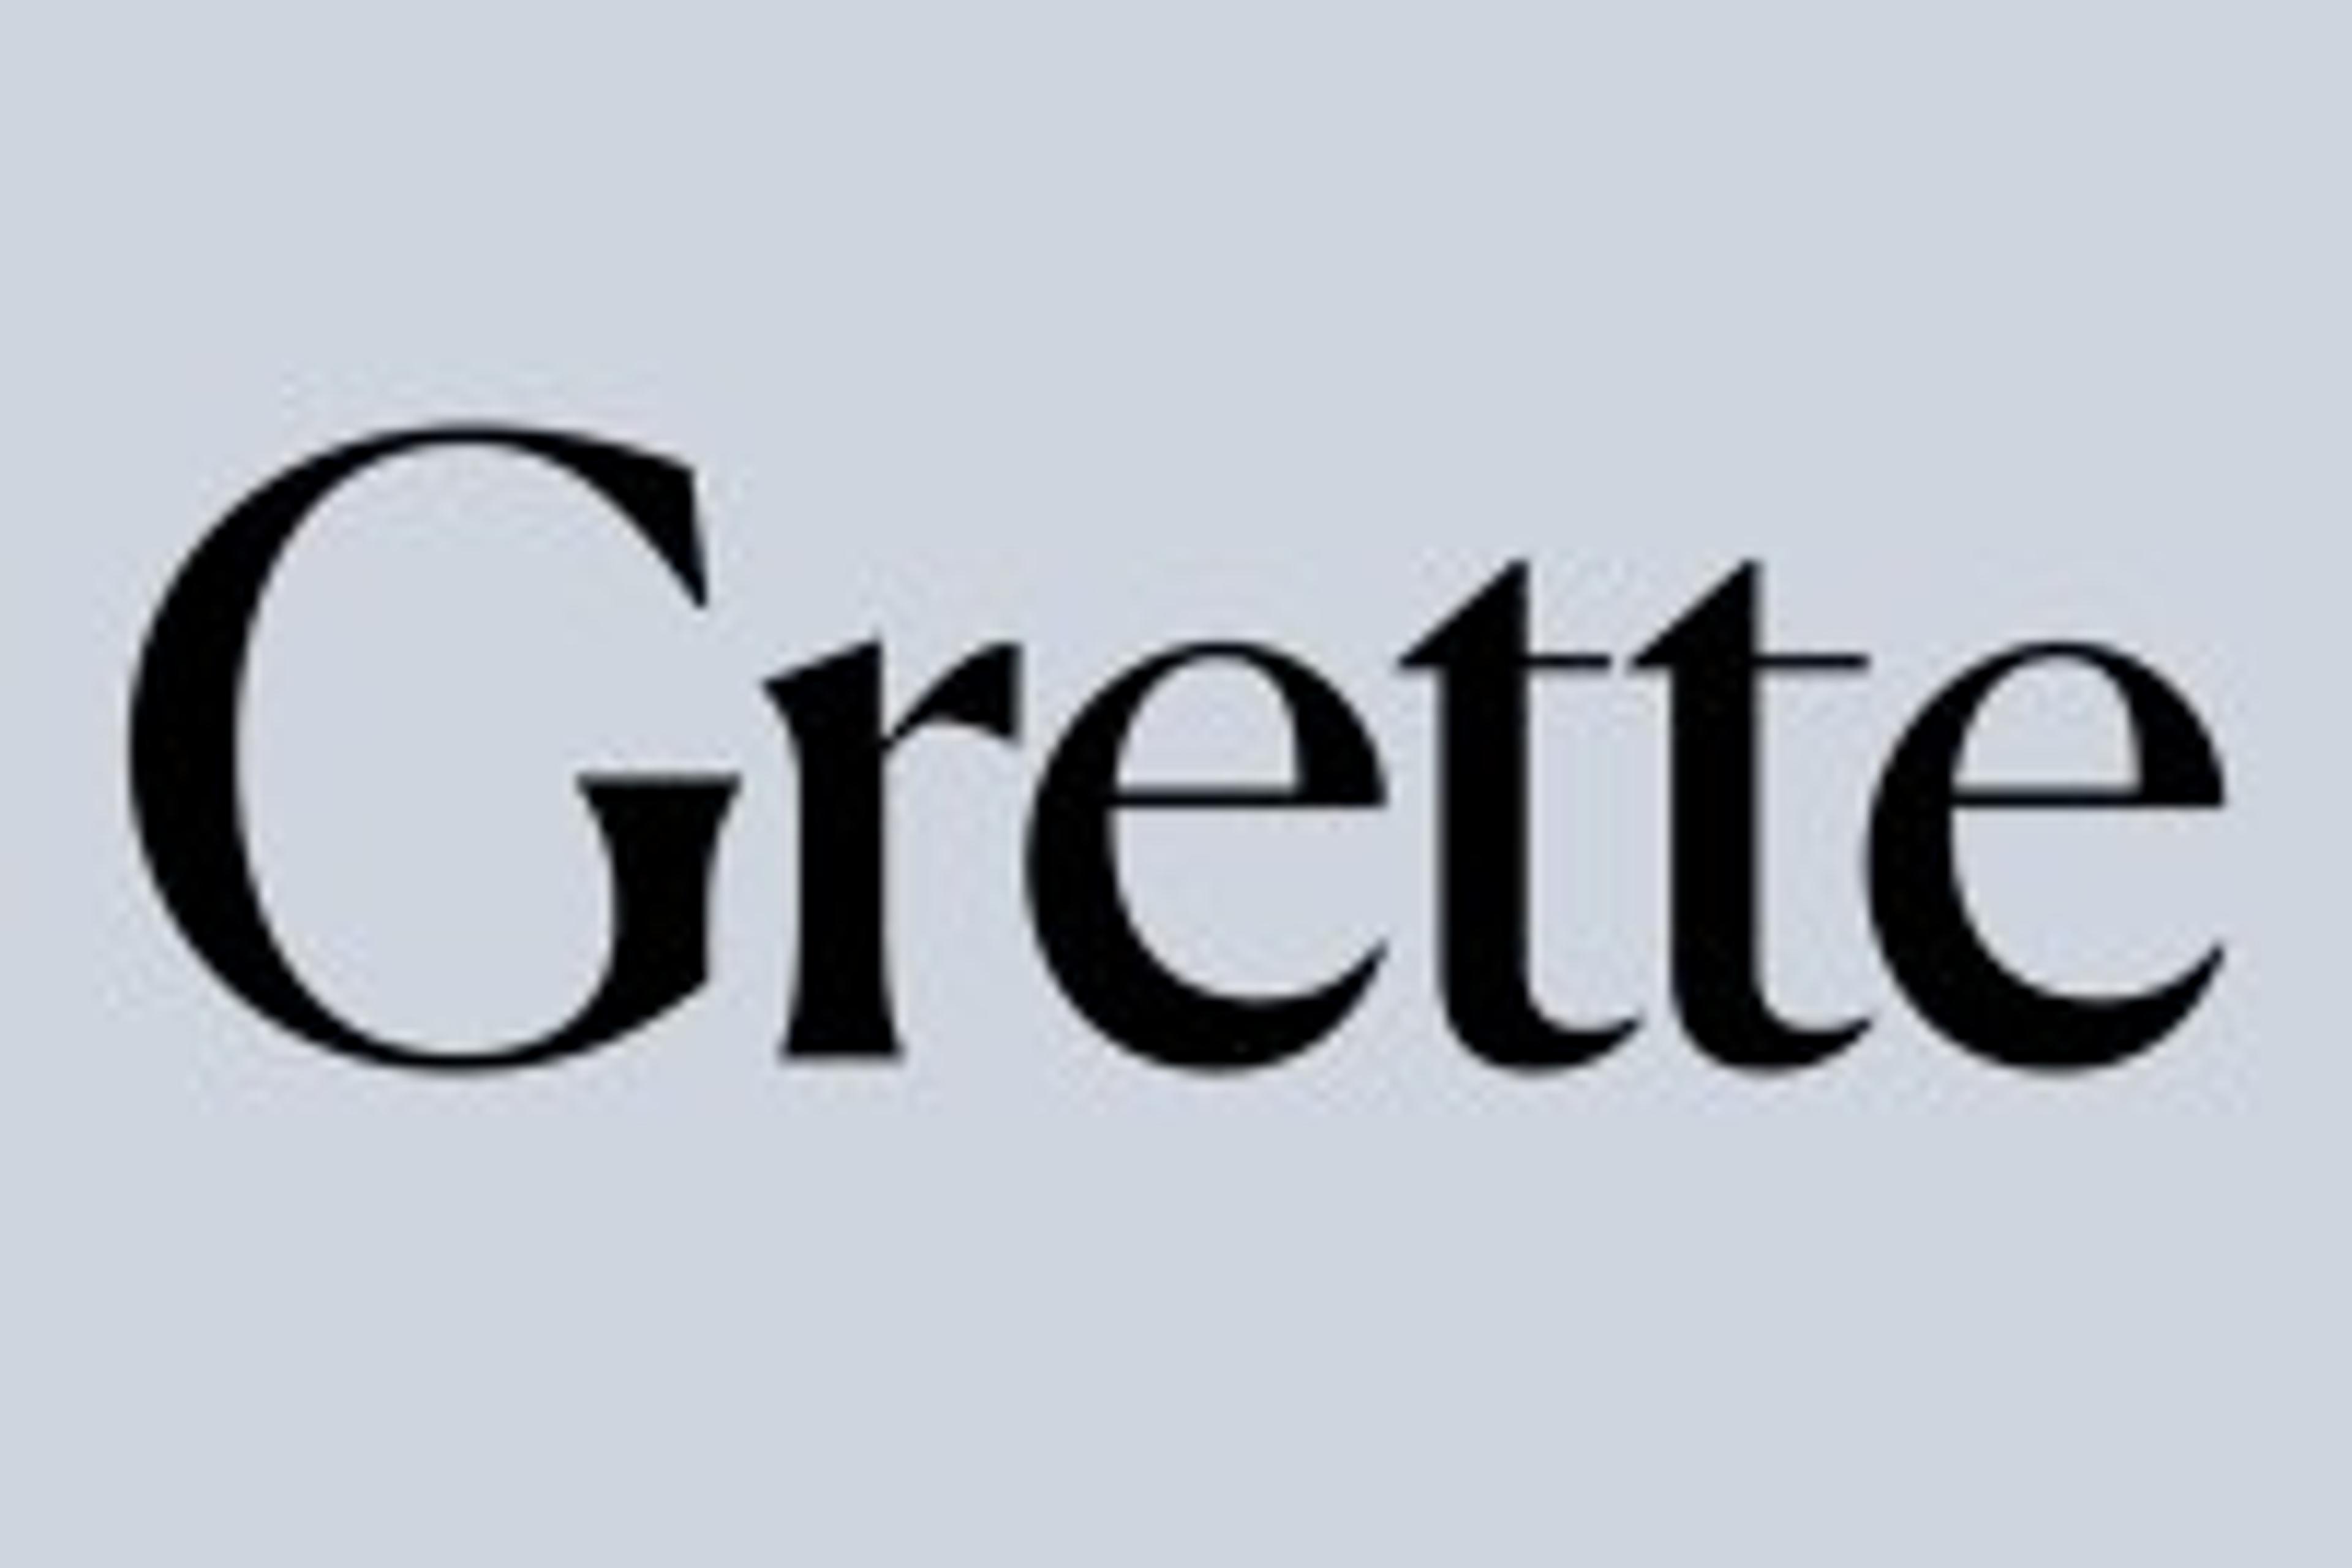 Grette logo